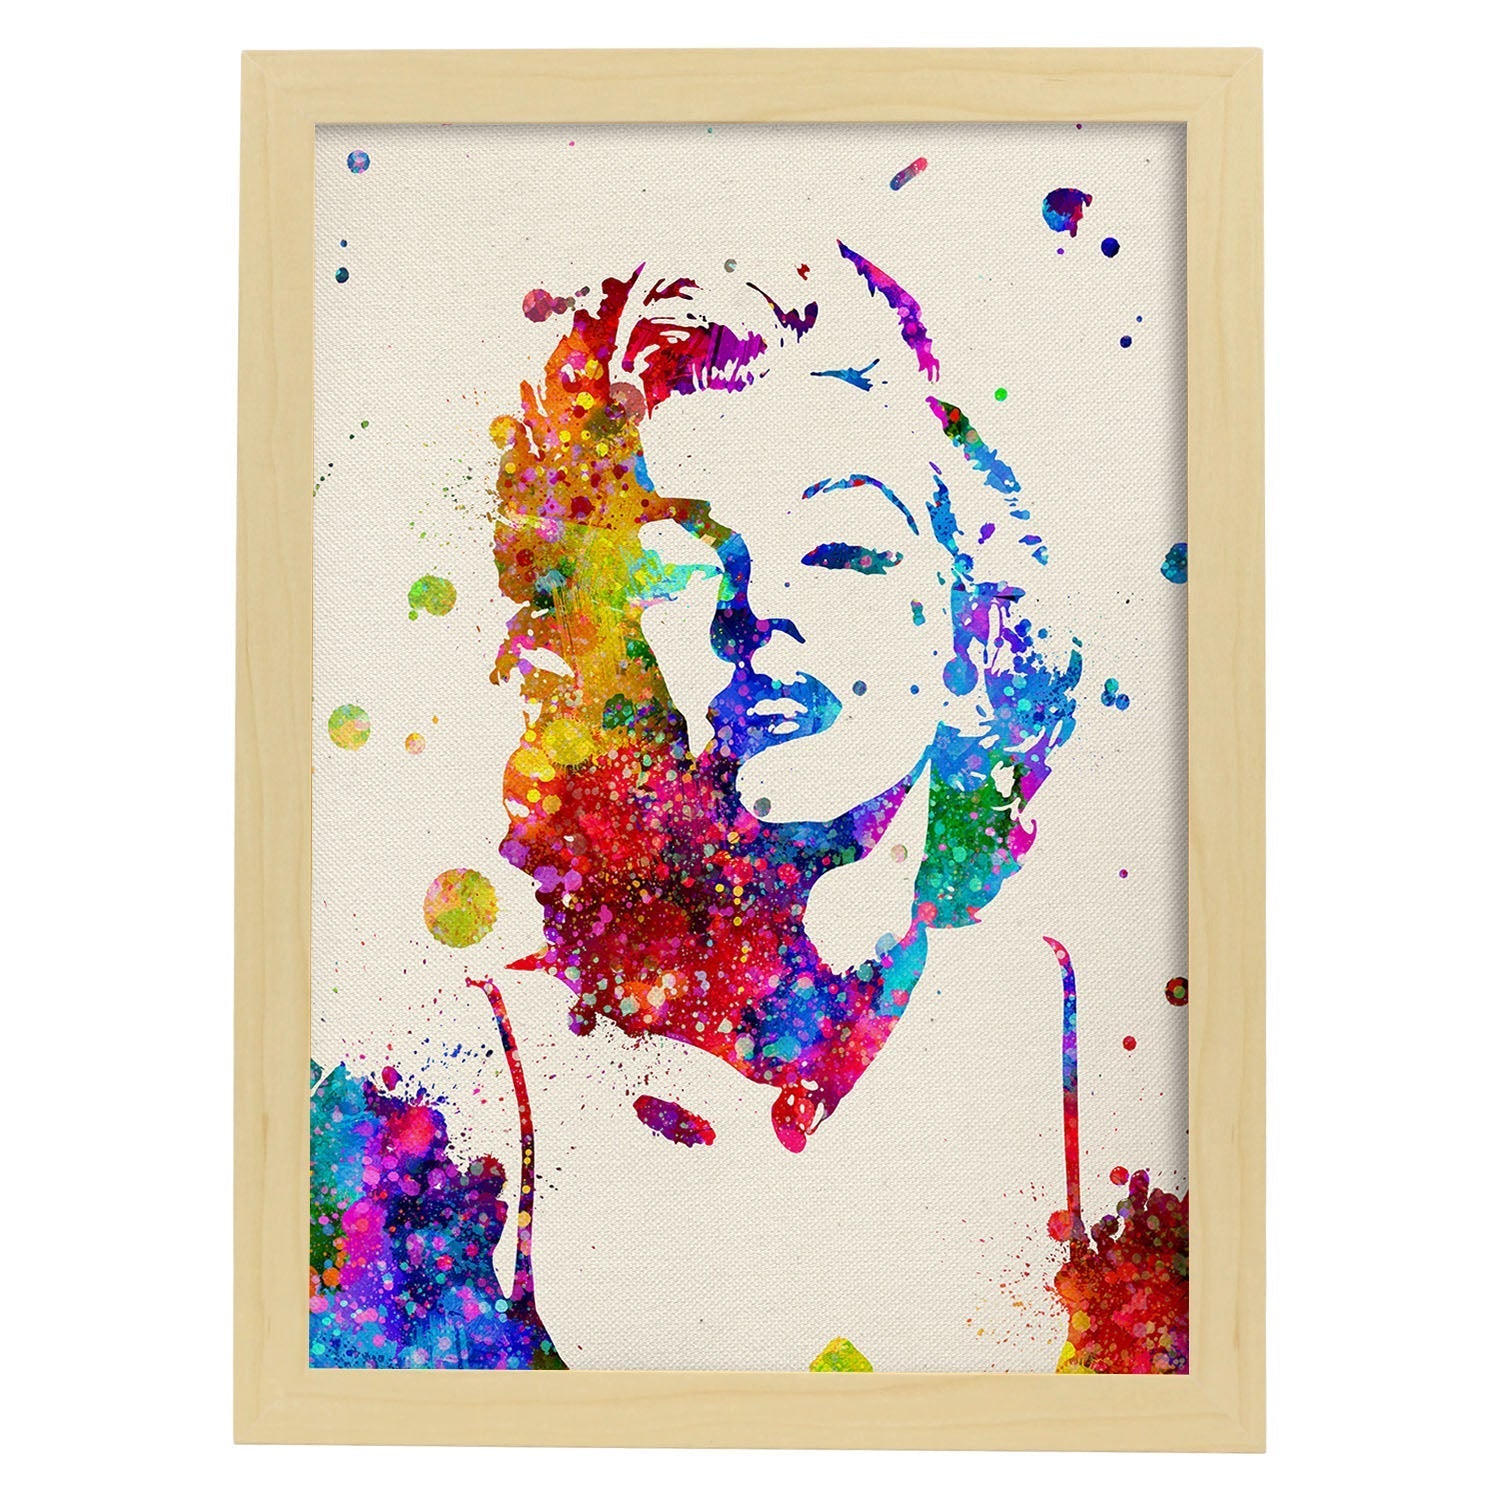 Poster imagen de Marilyn Monroe. Posters con diseño acuarela de famosos, actores, músicos-Artwork-Nacnic-A3-Marco Madera clara-Nacnic Estudio SL